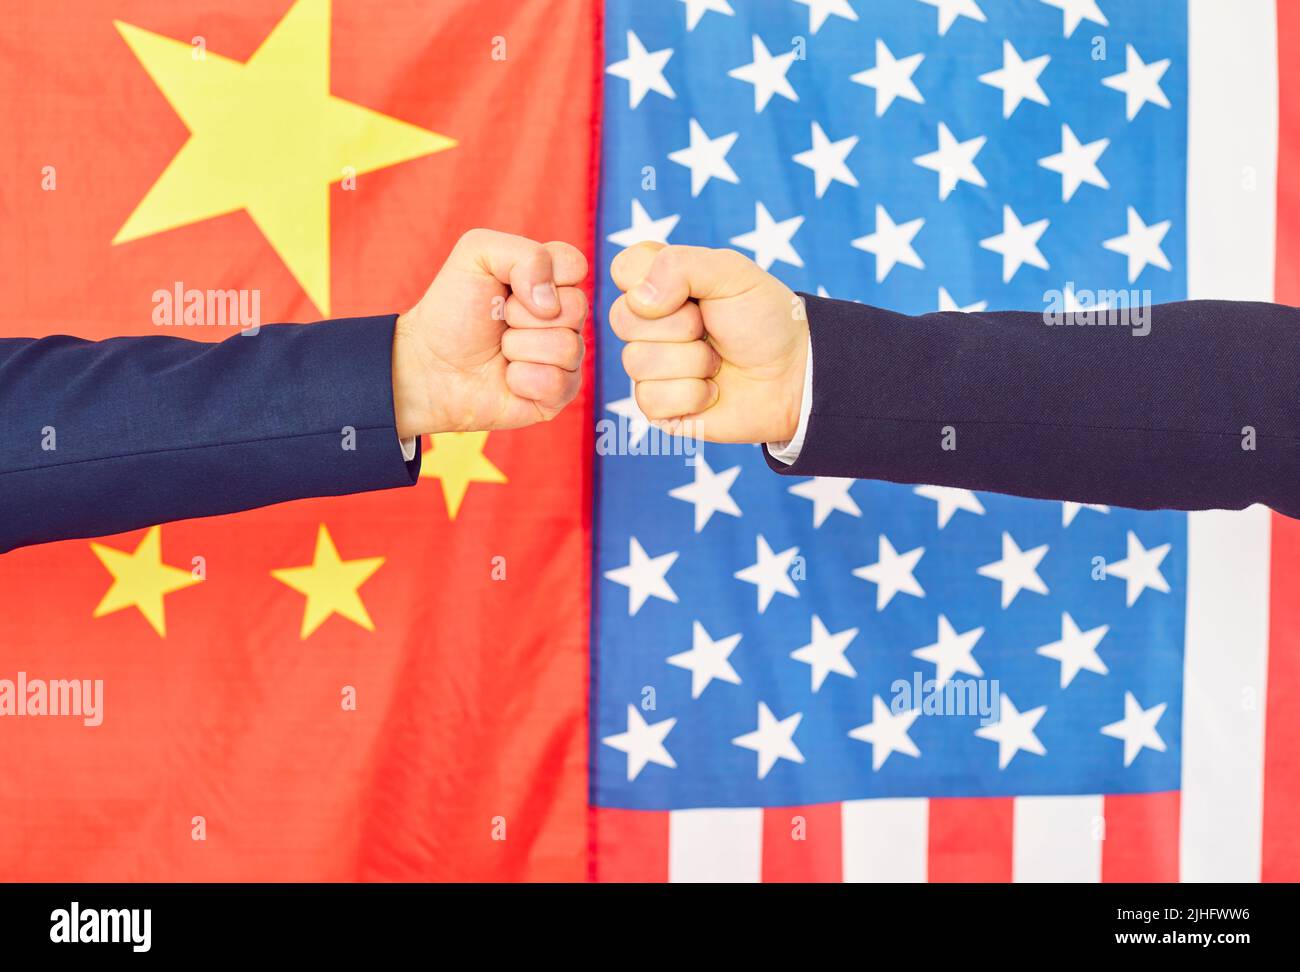 Fäuste vor dem Hintergrund chinesischer und amerikanischer Flaggen als Symbol für Konfrontation und Meinungsverschiedenheiten. Stockfoto